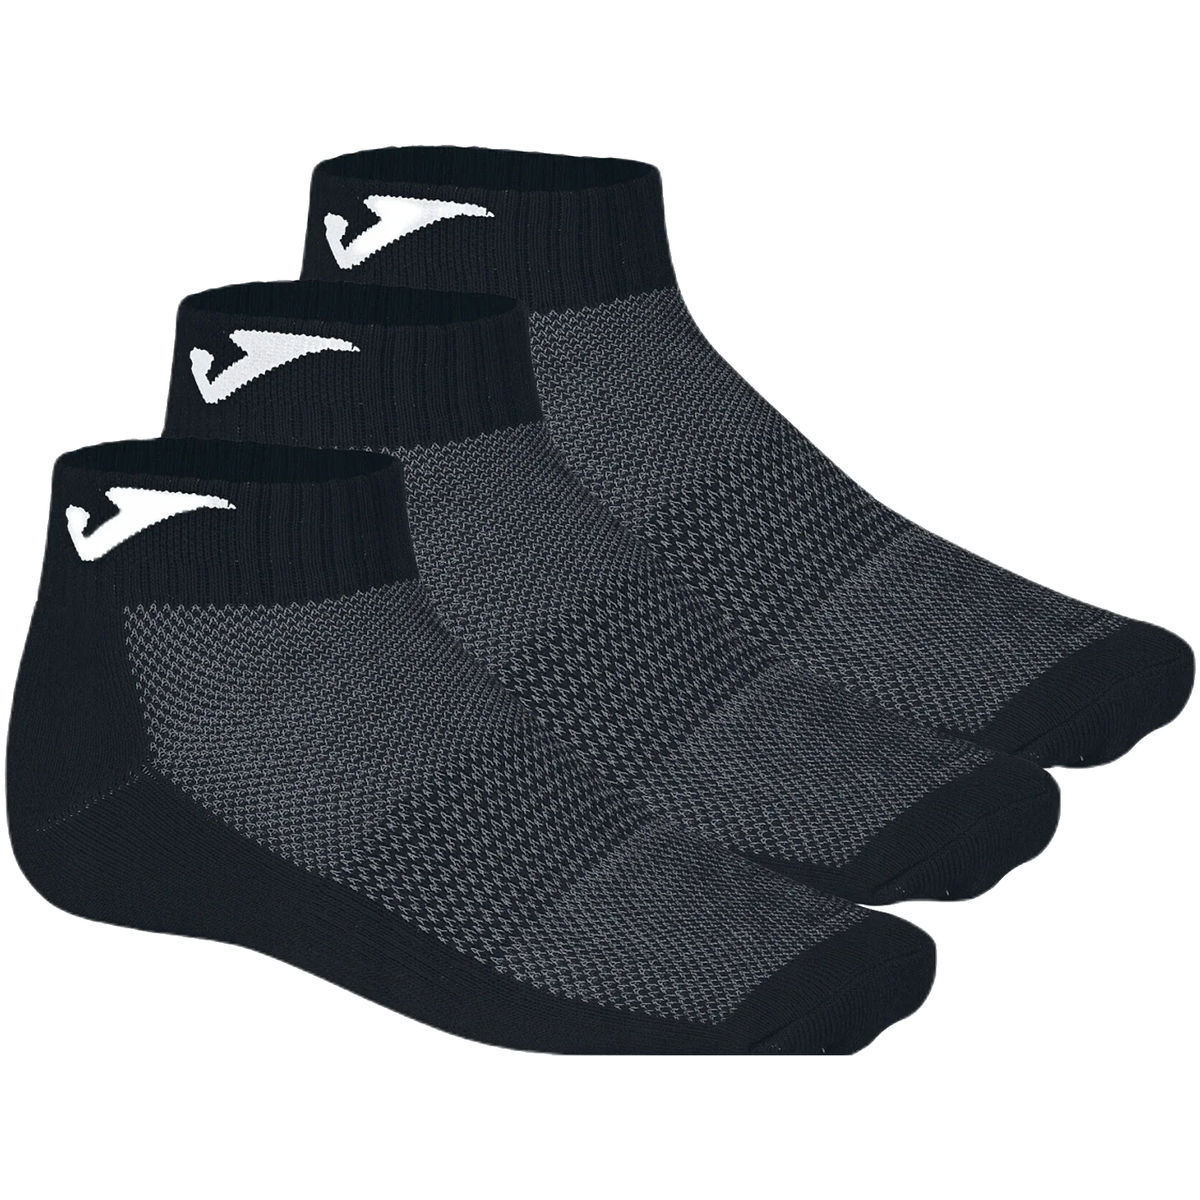 Αθλητικές κάλτσες Joma Ankle 3PPK Socks